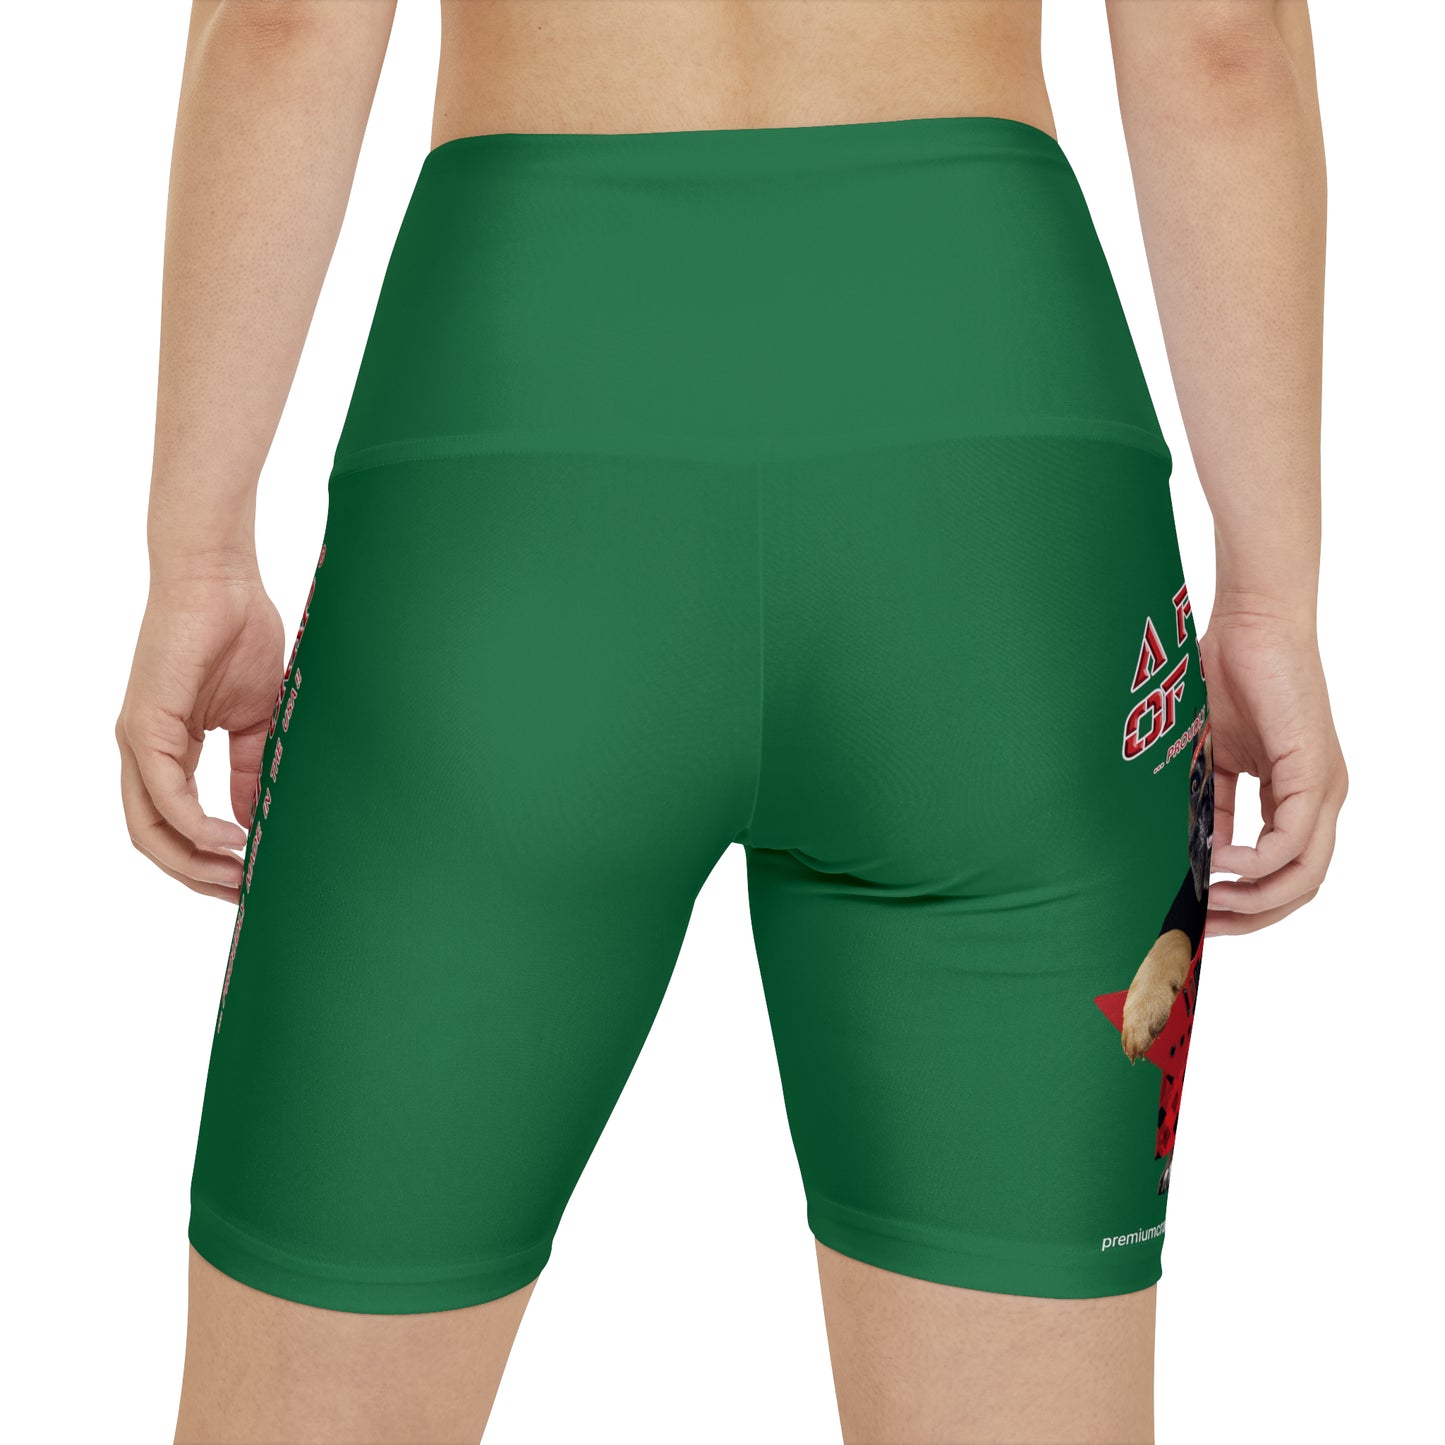 A Piece Of Crap II Women's Workout Shorts - Dark Green